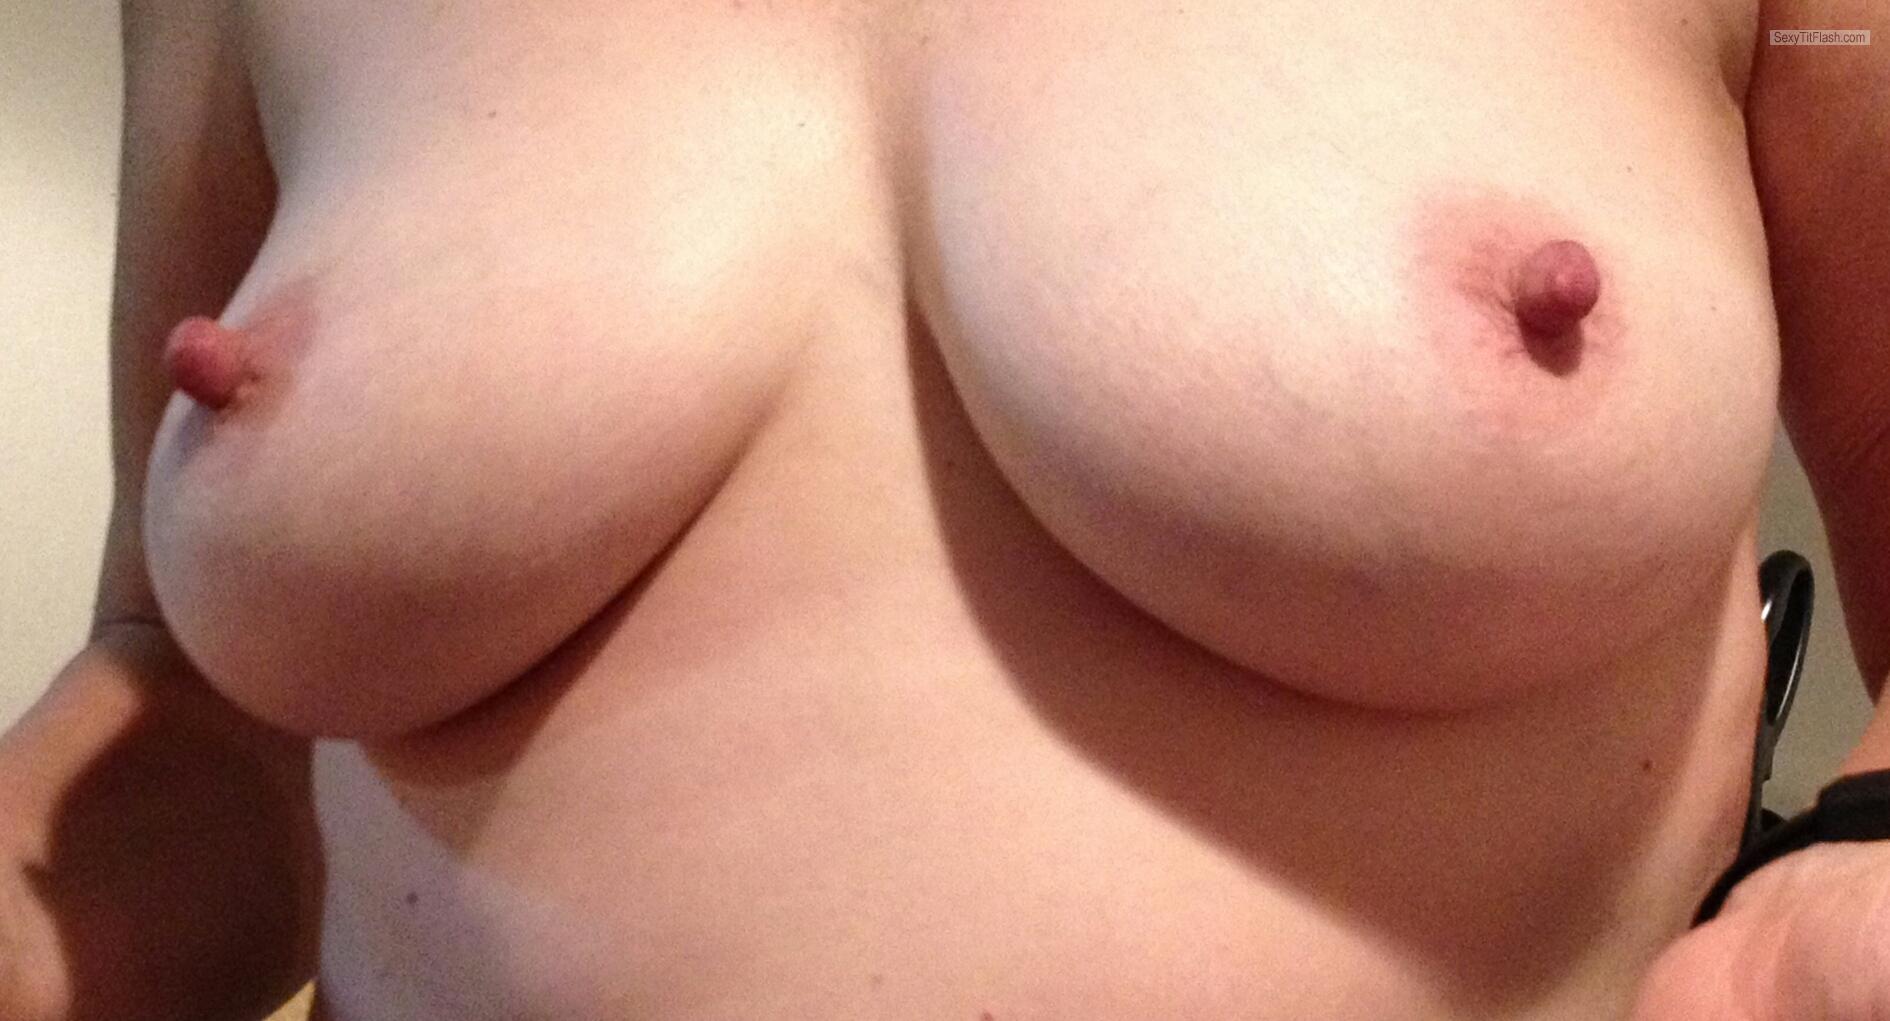 Tit Flash: My Big Tits (Selfie) - Reelnice from United Kingdom